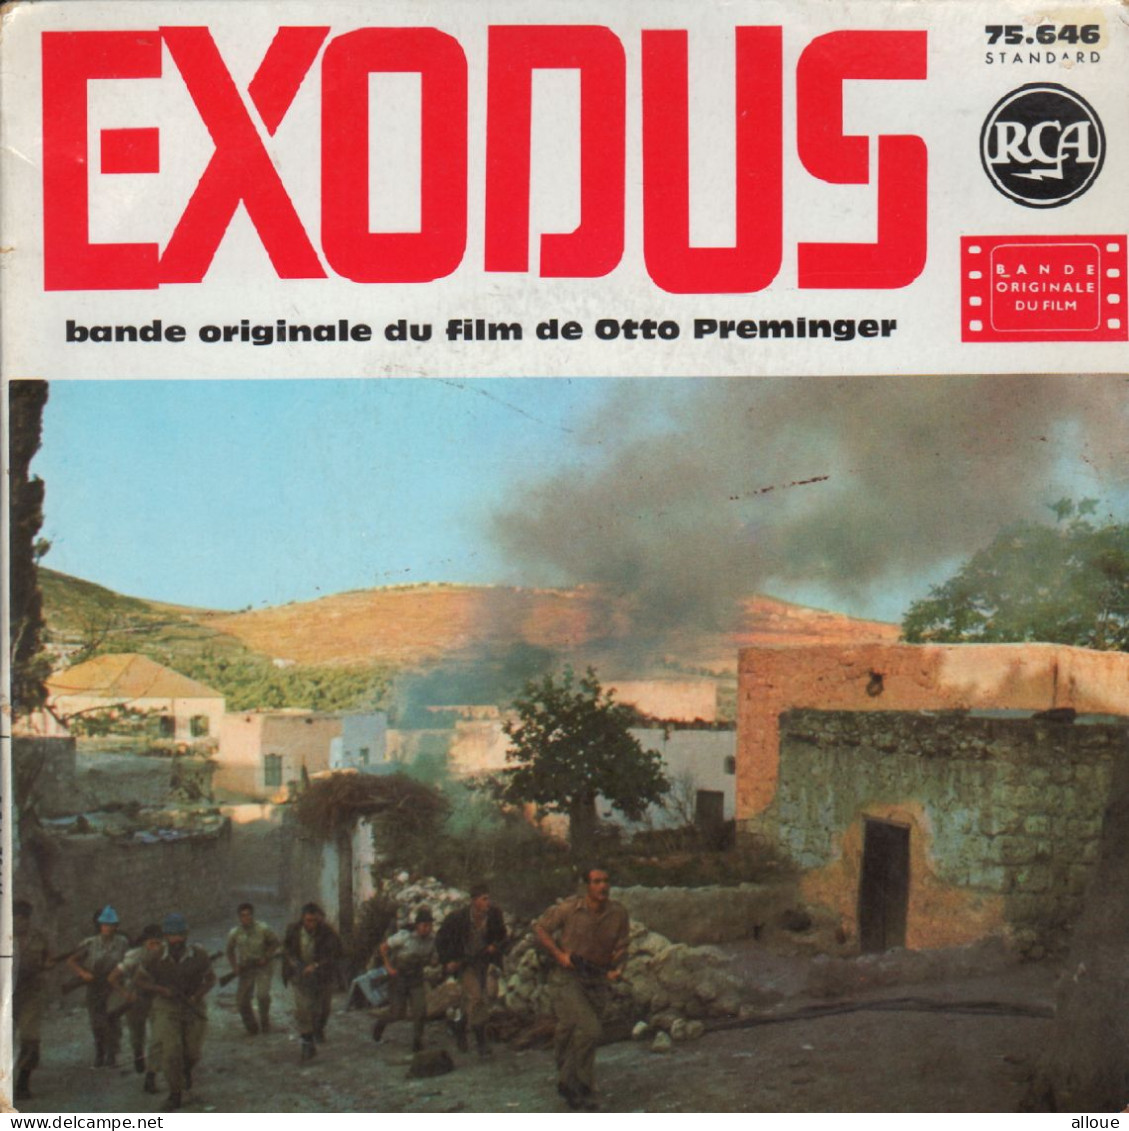 EXODUS FRENCH EP - BO DU FILM - THEME OF EXODUS CONSPIRACY + 4 - Música De Peliculas